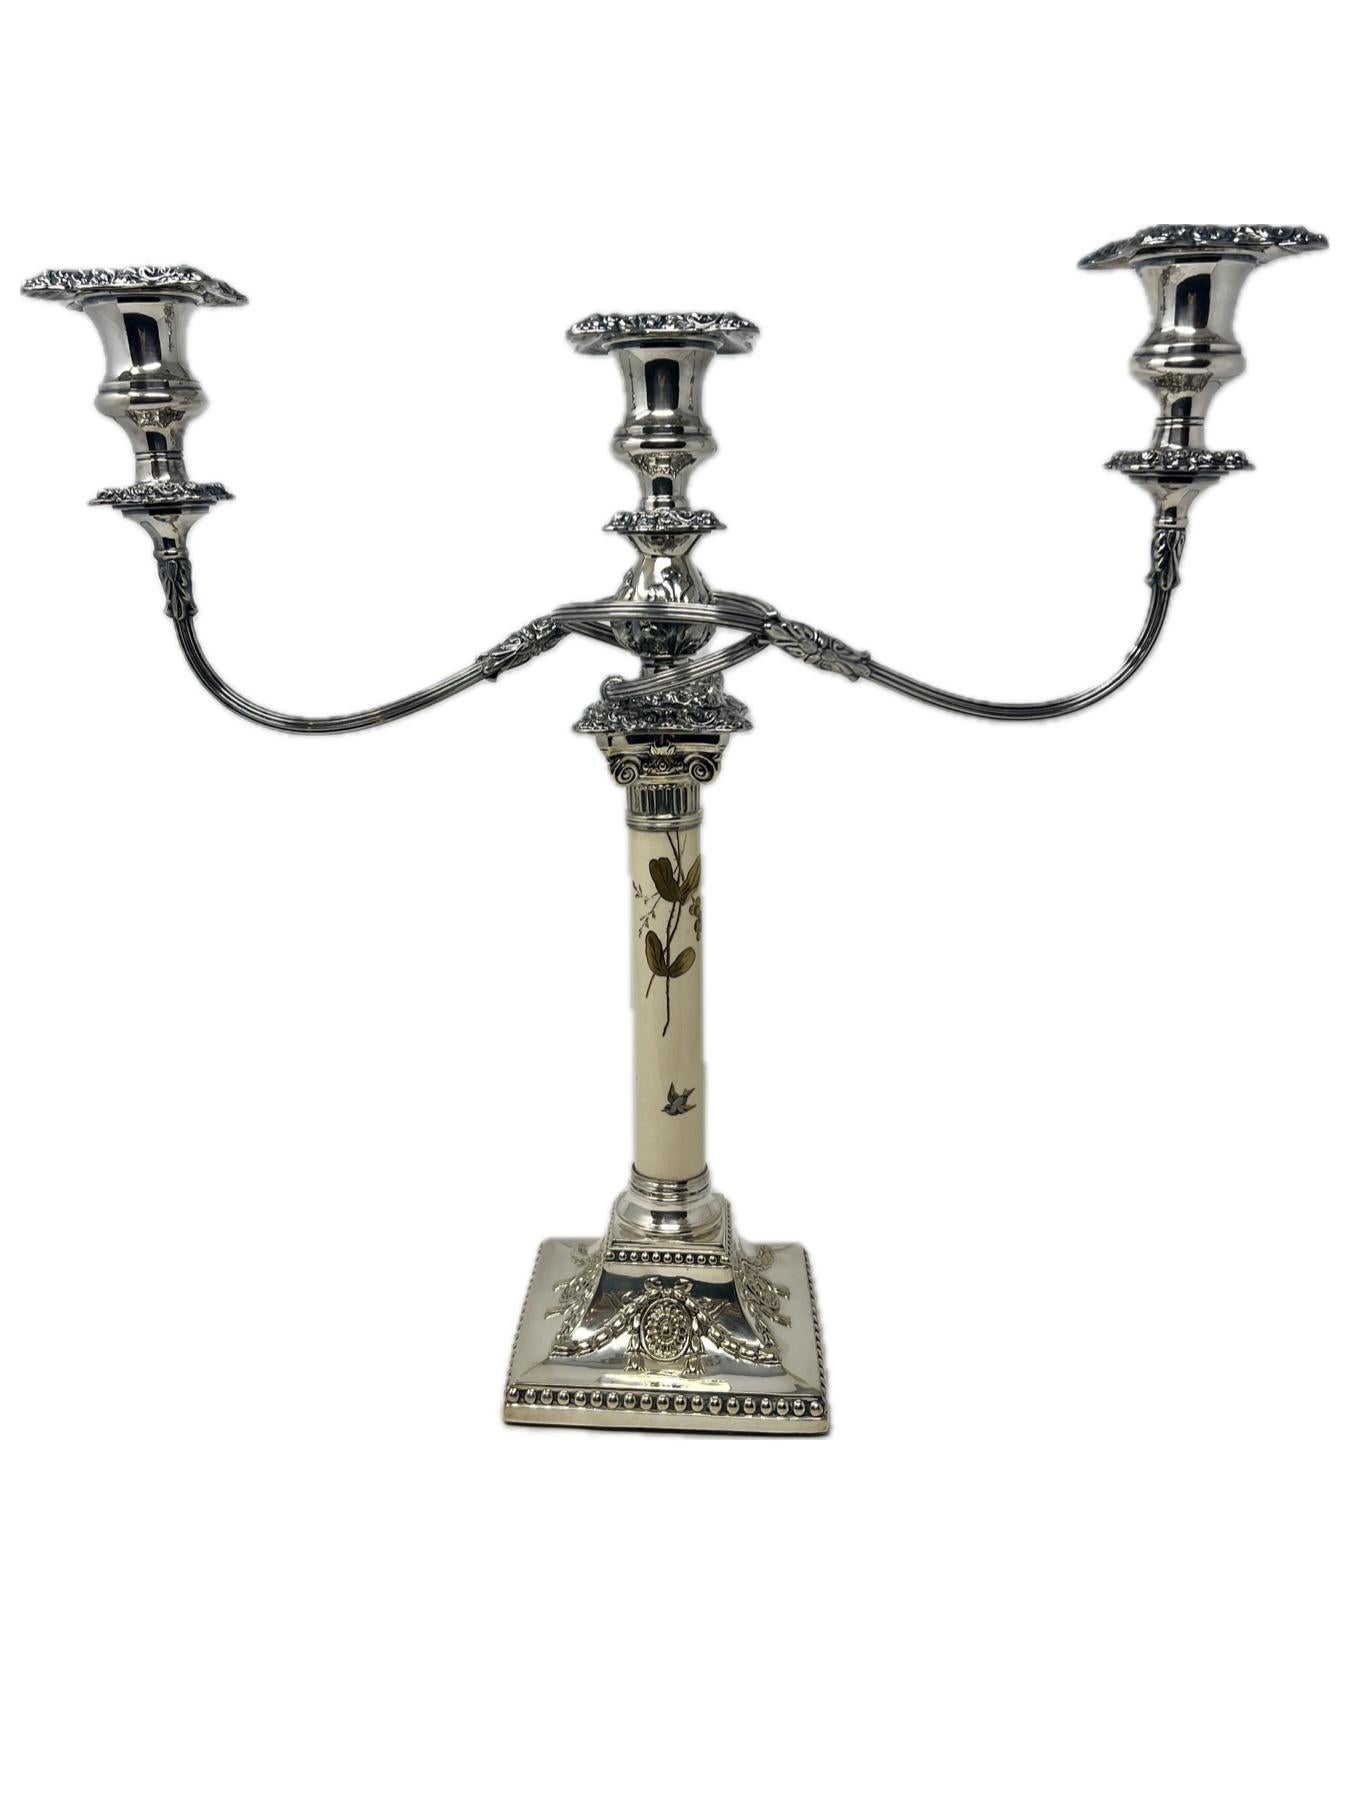 Paire de chandeliers en argent plaqué du mouvement esthétique anglais, vers 1950-1960.